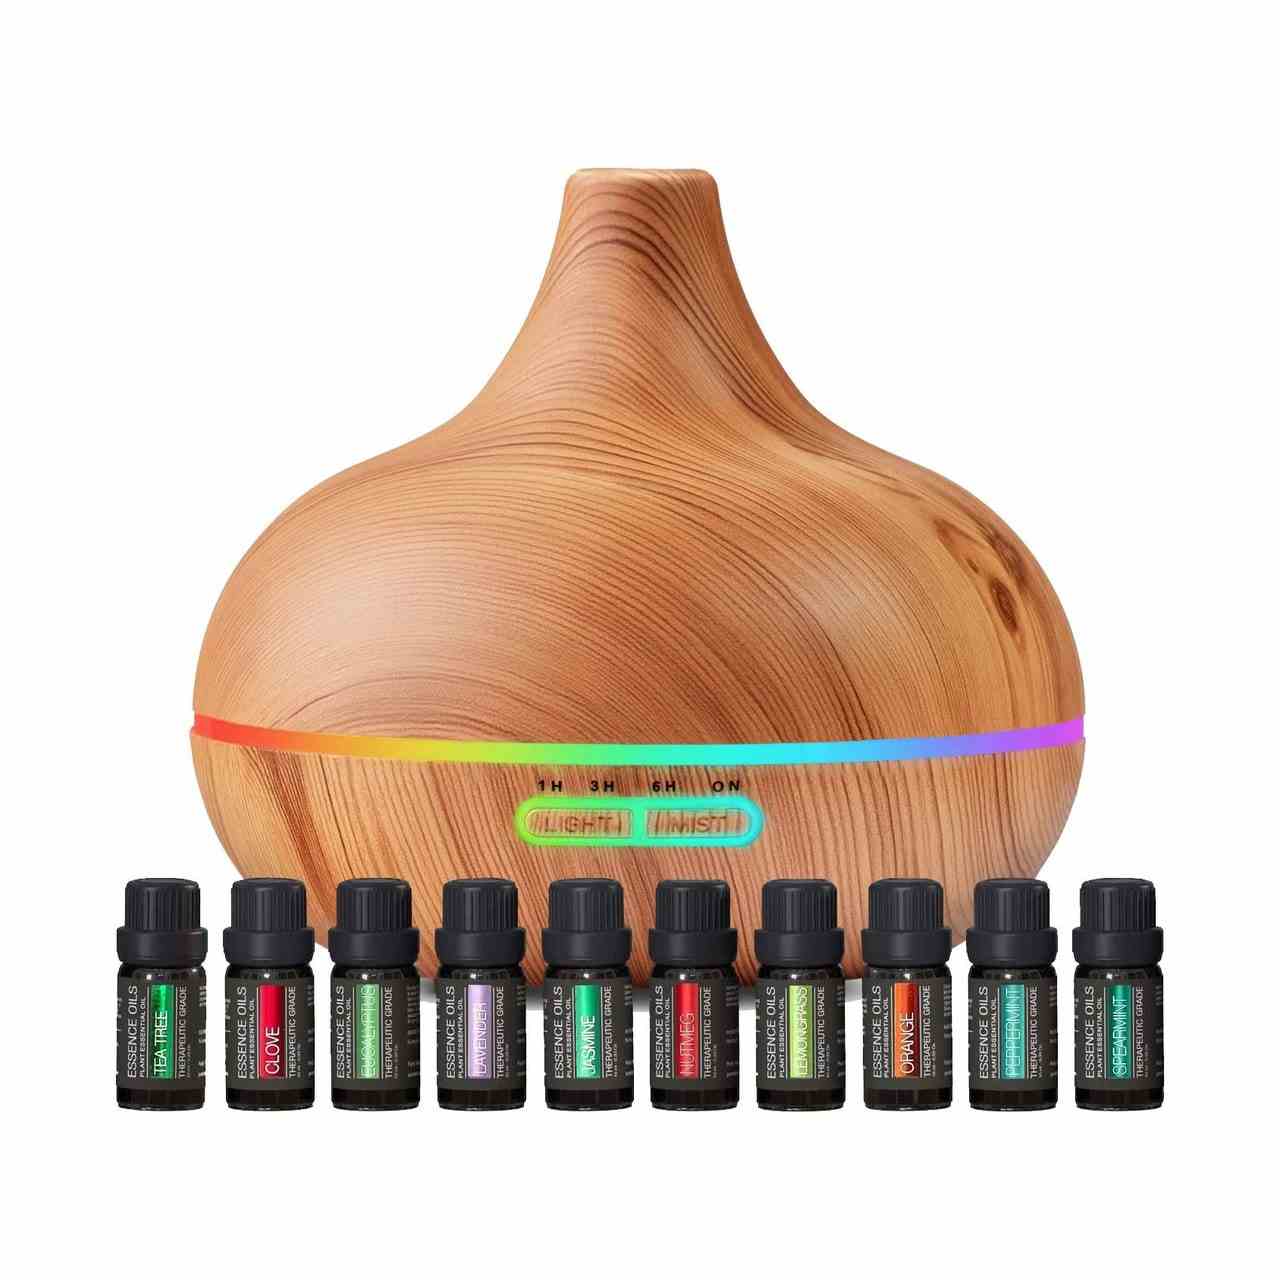 Ultimate Aromatherapy Diffuser & Essential Oil Set auf weißem Hintergrund